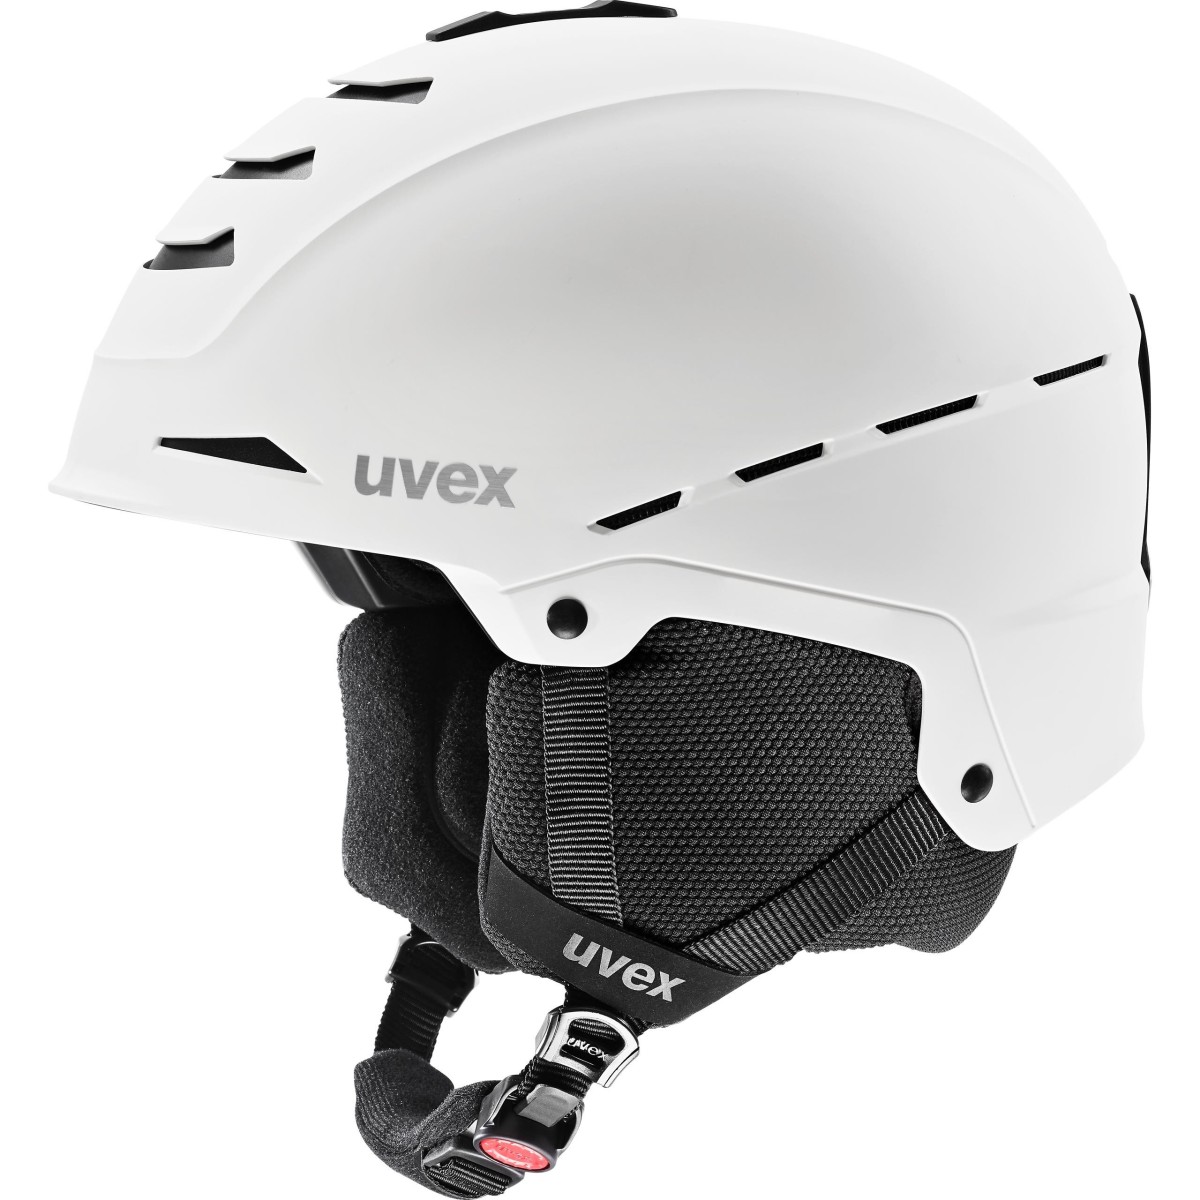 UVEX helmet LEGEND white mat